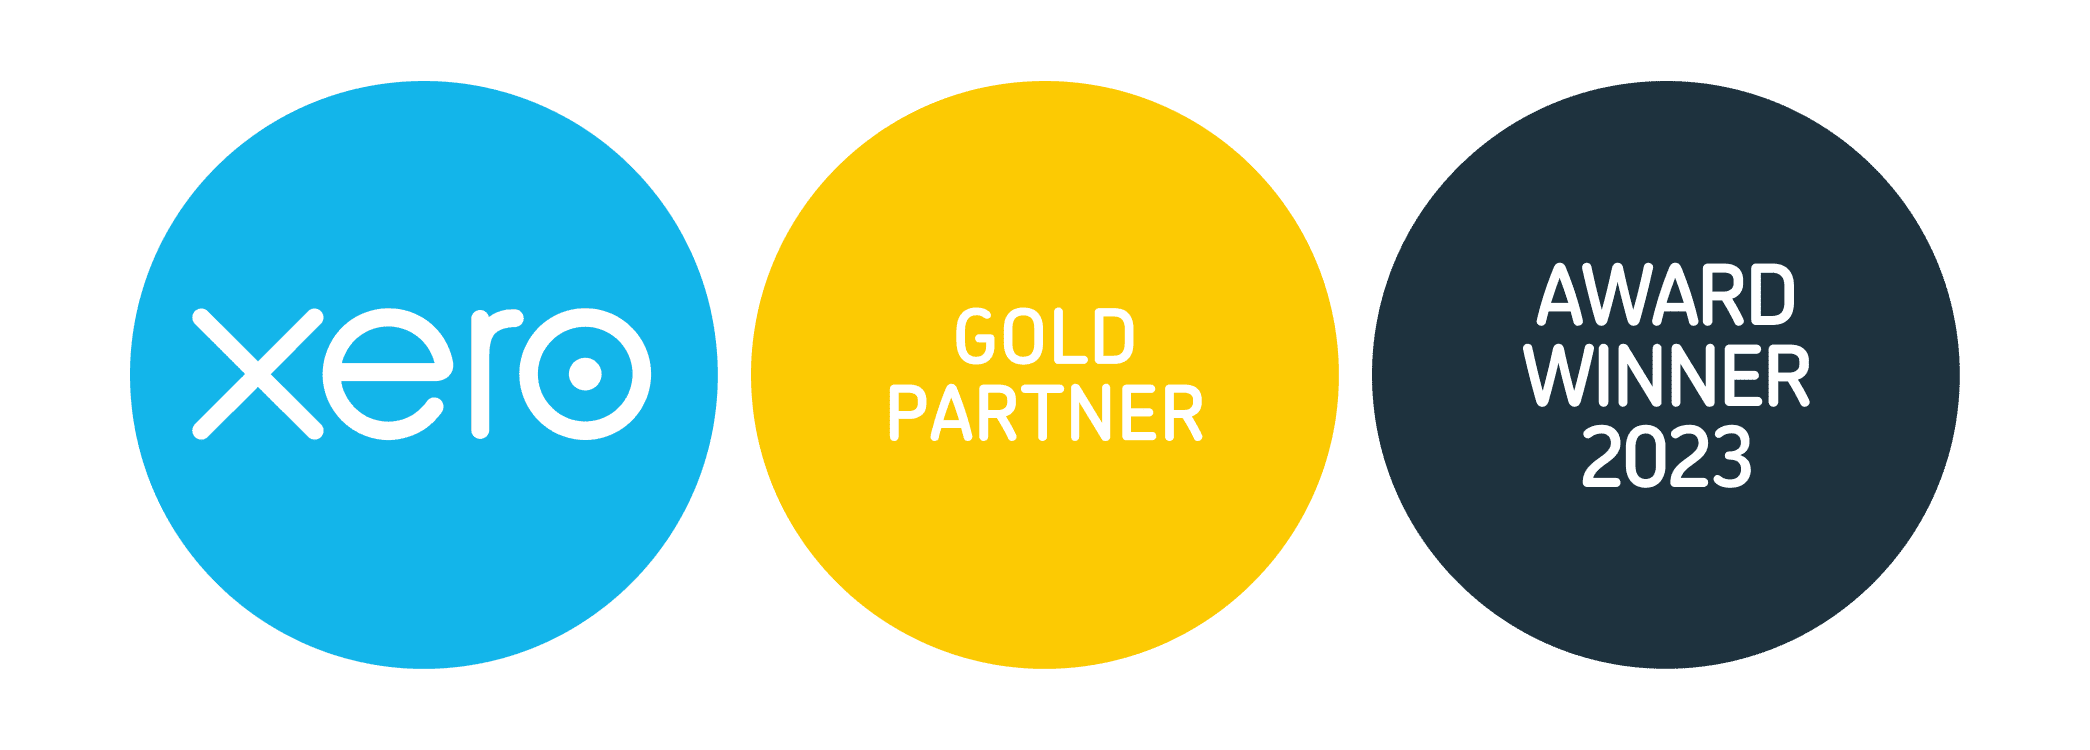 Xero awards website winner badge gold partner